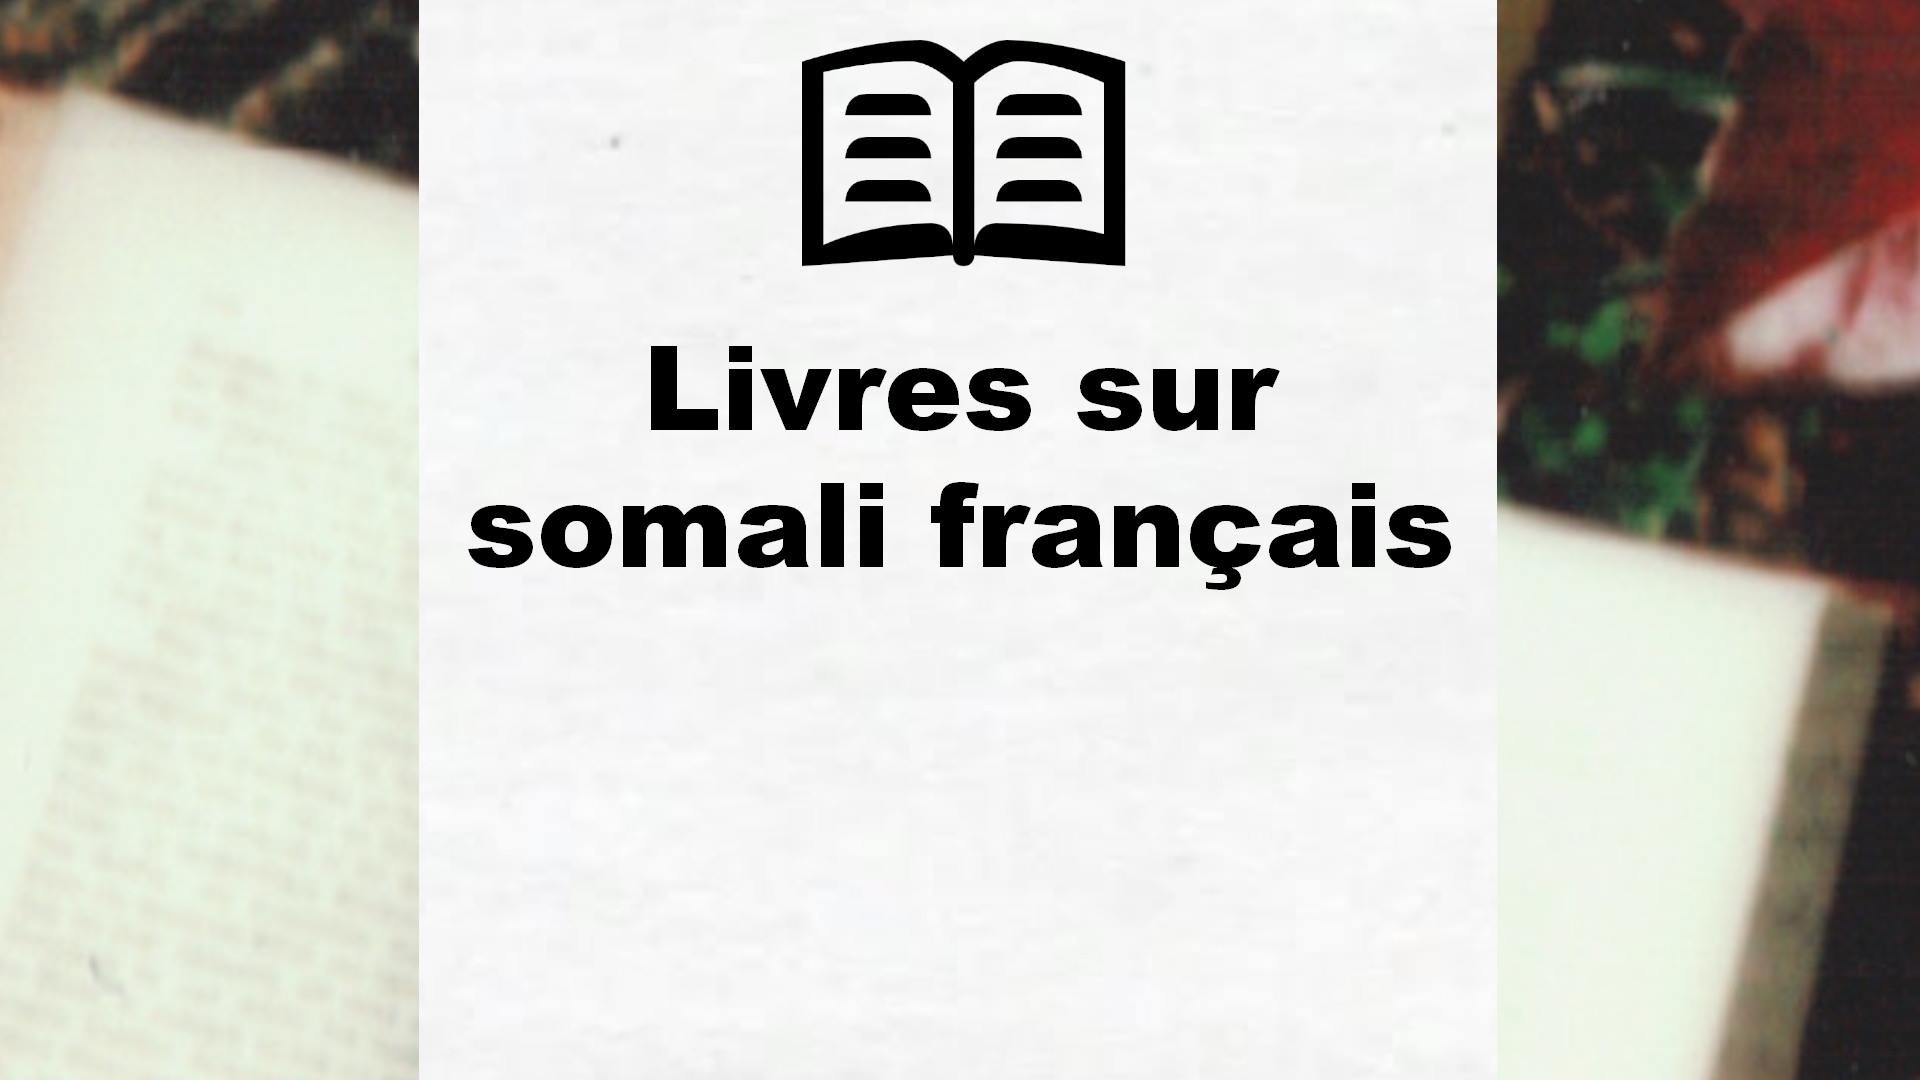 Livres sur somali français